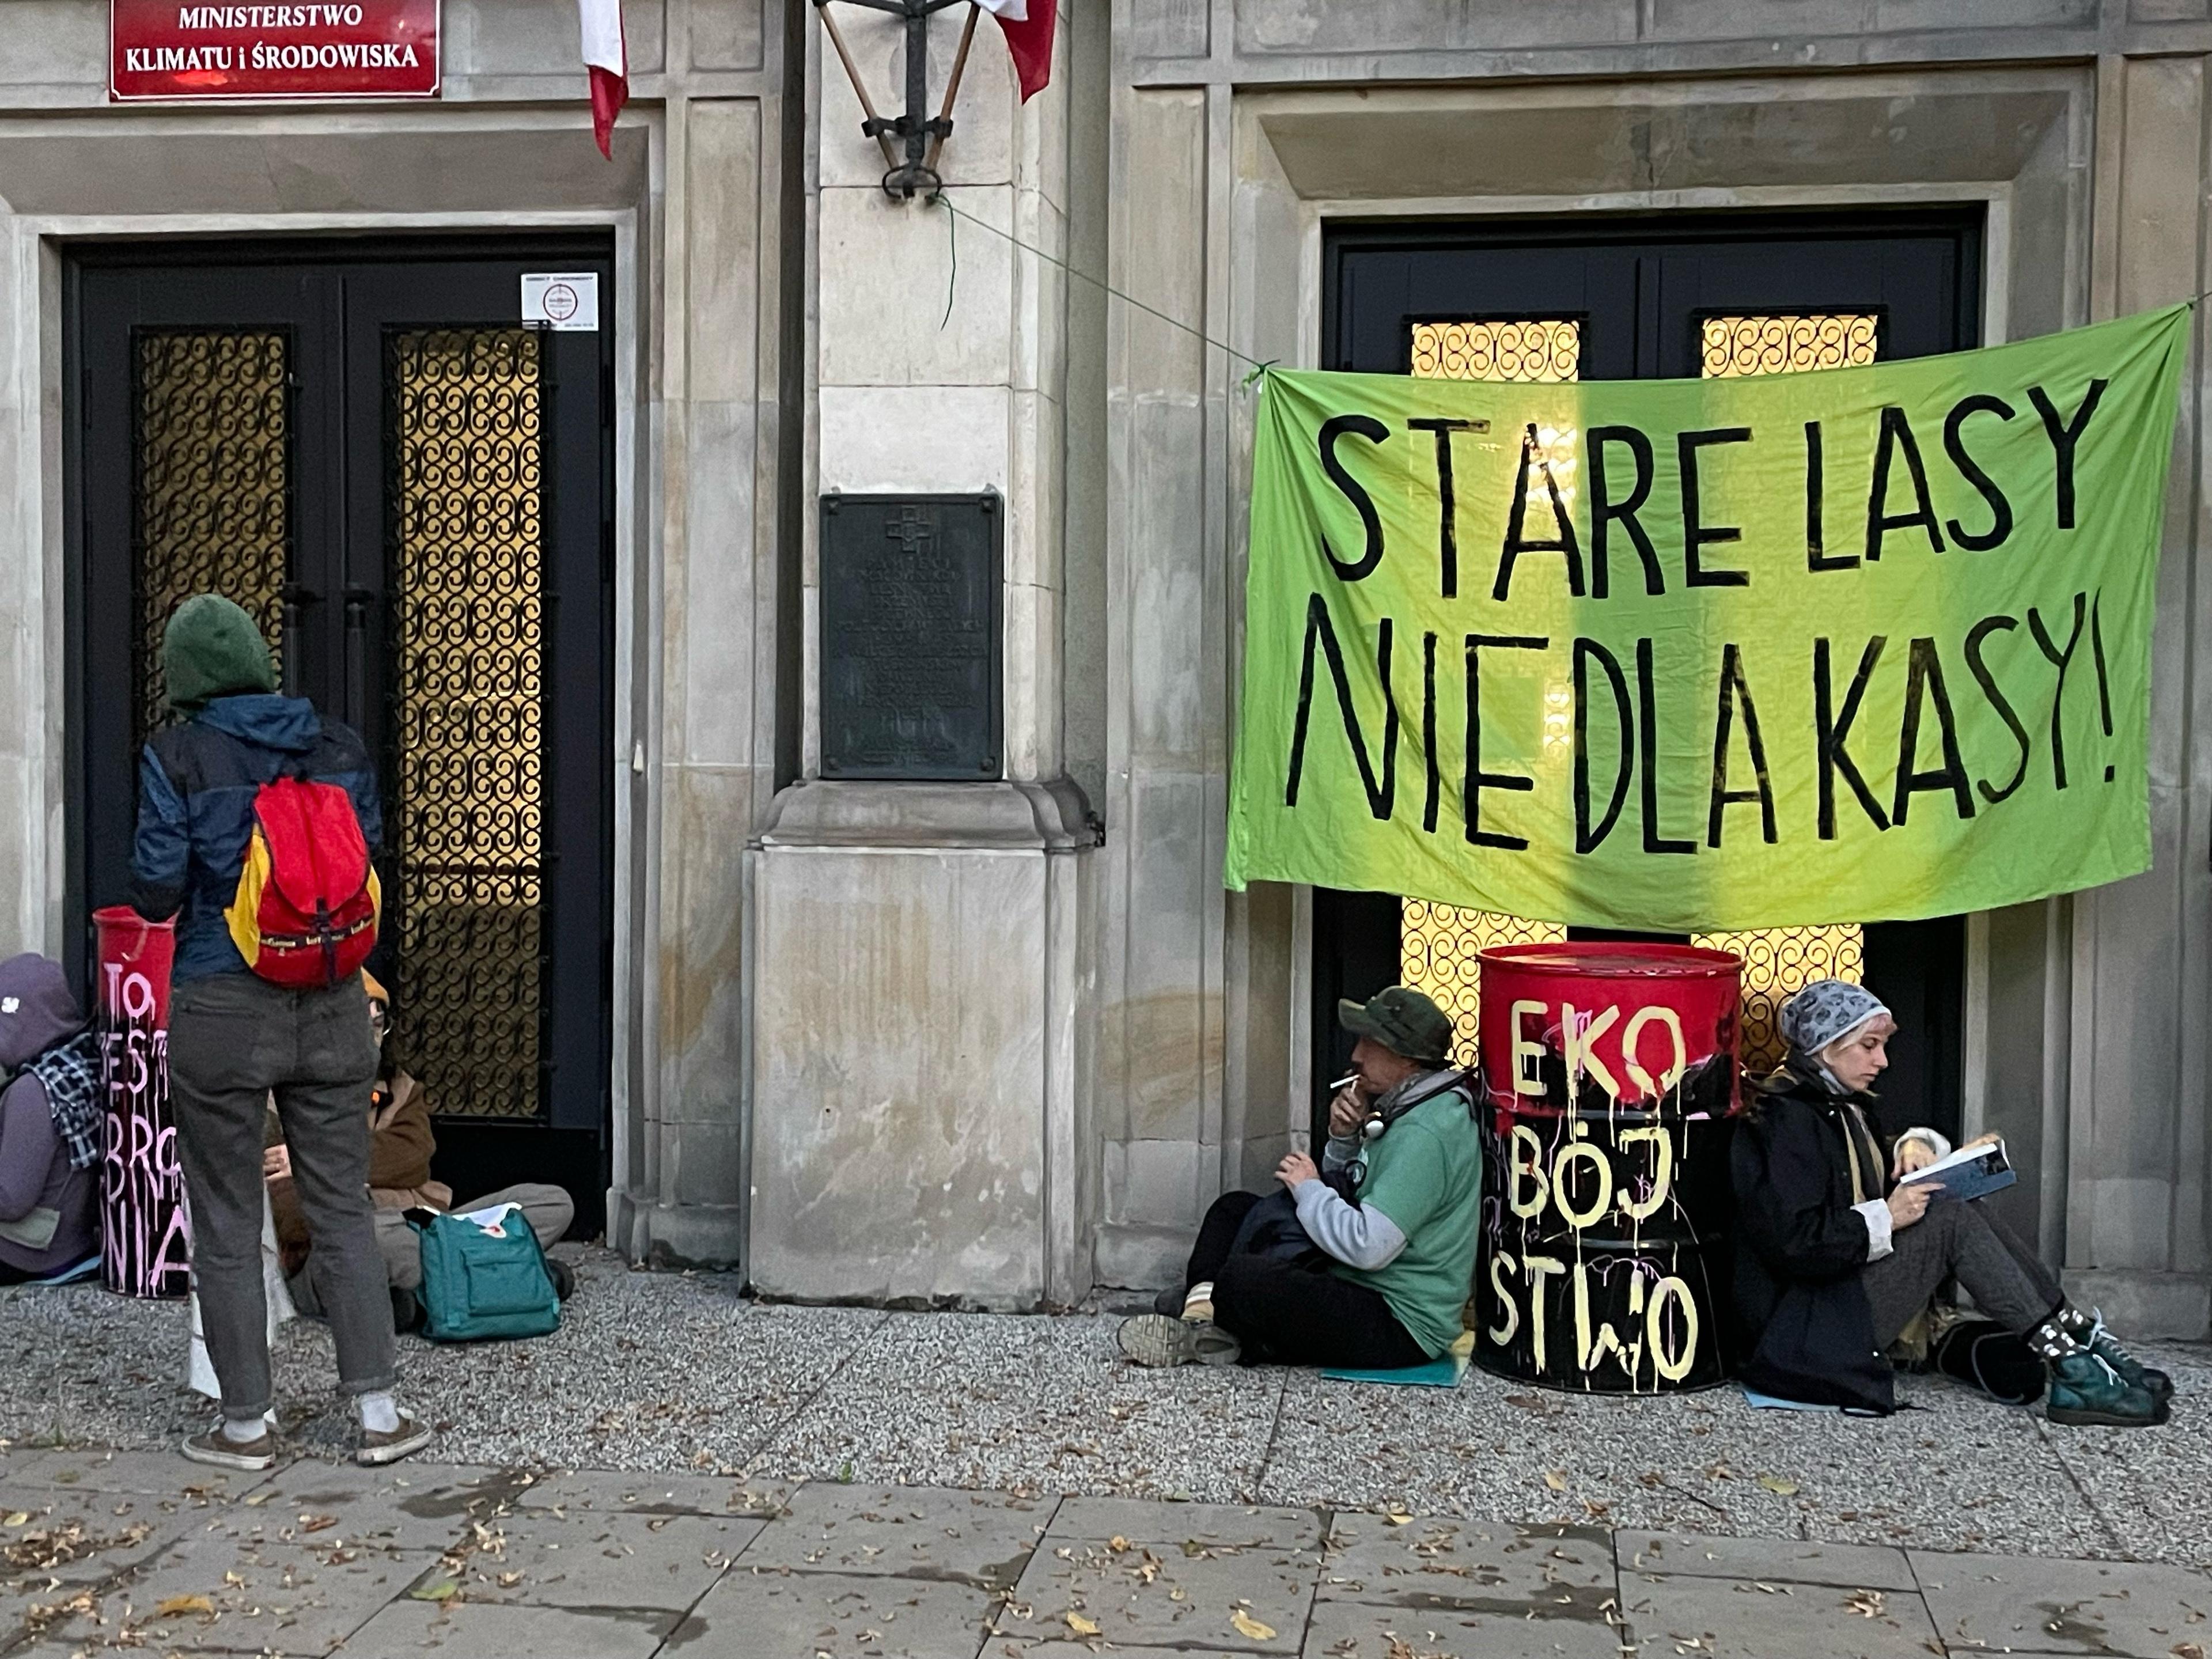 aktywiści siedzą pod budynkiem ministerstwa pod napisem "Stare lasy nie dla kasy"